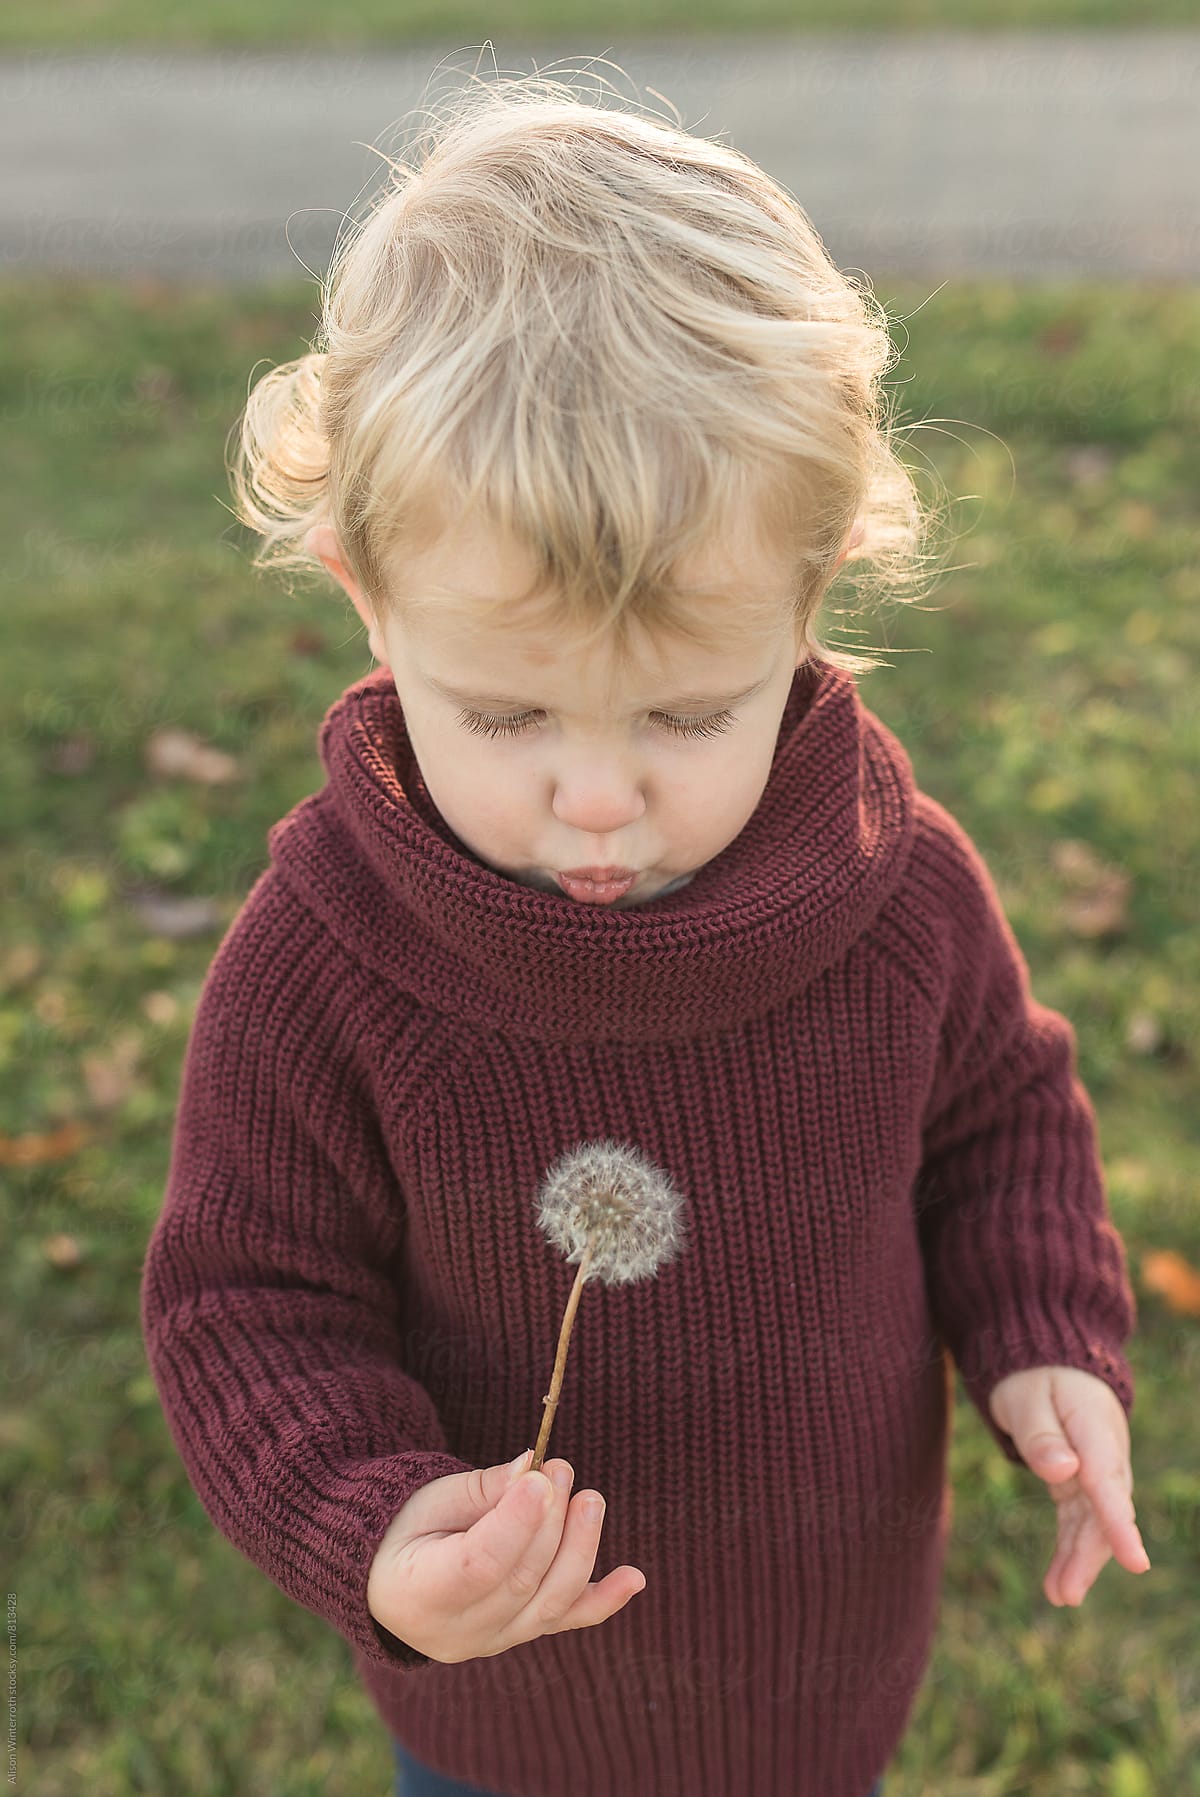 Toddler Holding A Dandelion